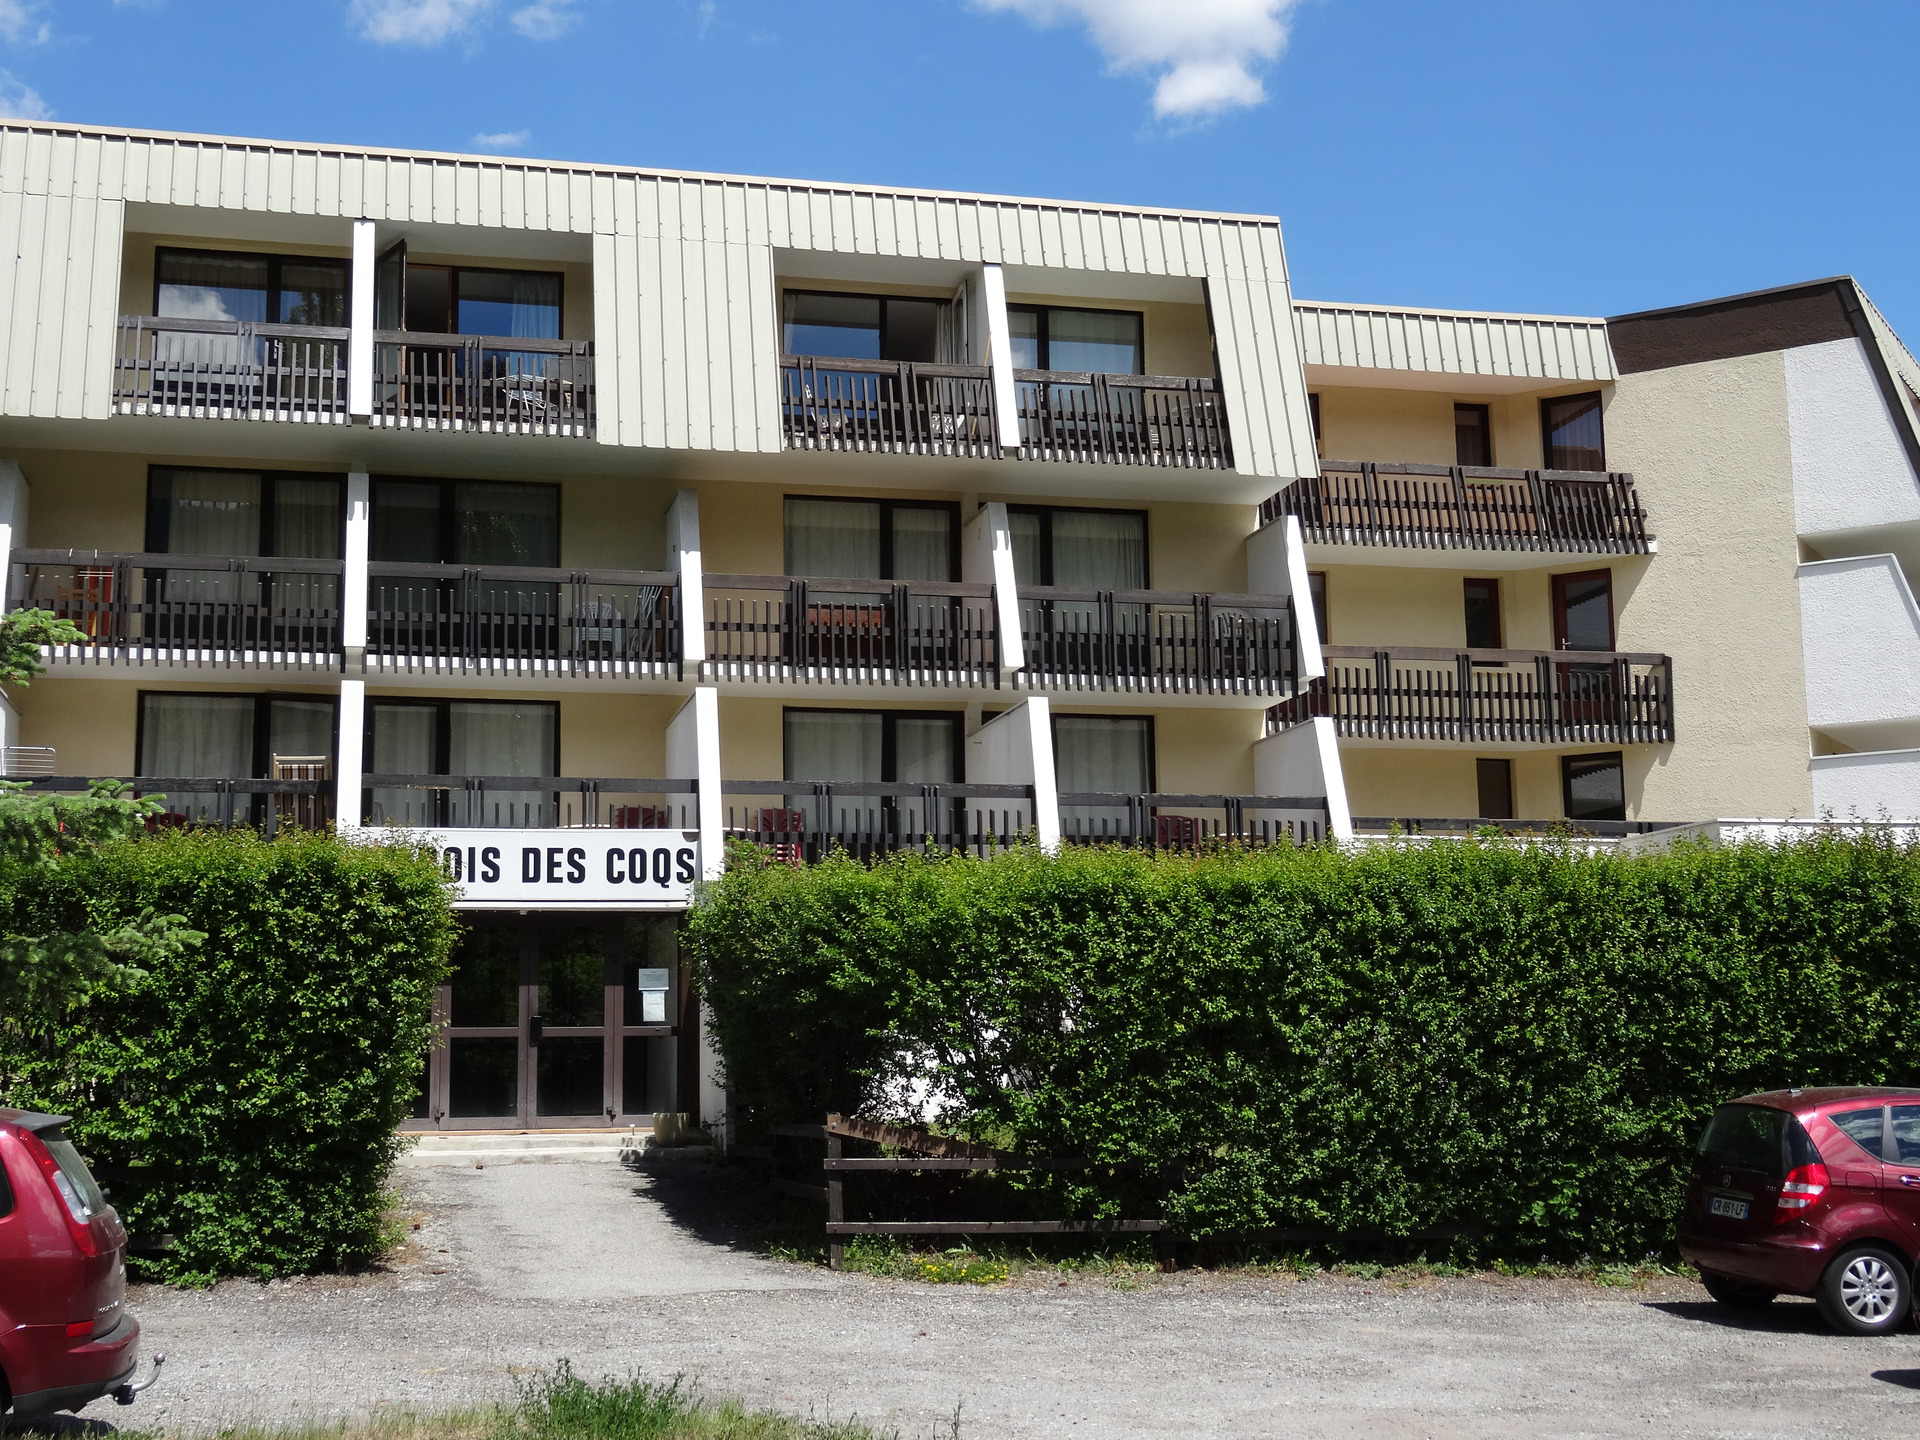 Appartements BOIS DES COQS - Serre Chevalier 1350 - Chantemerle